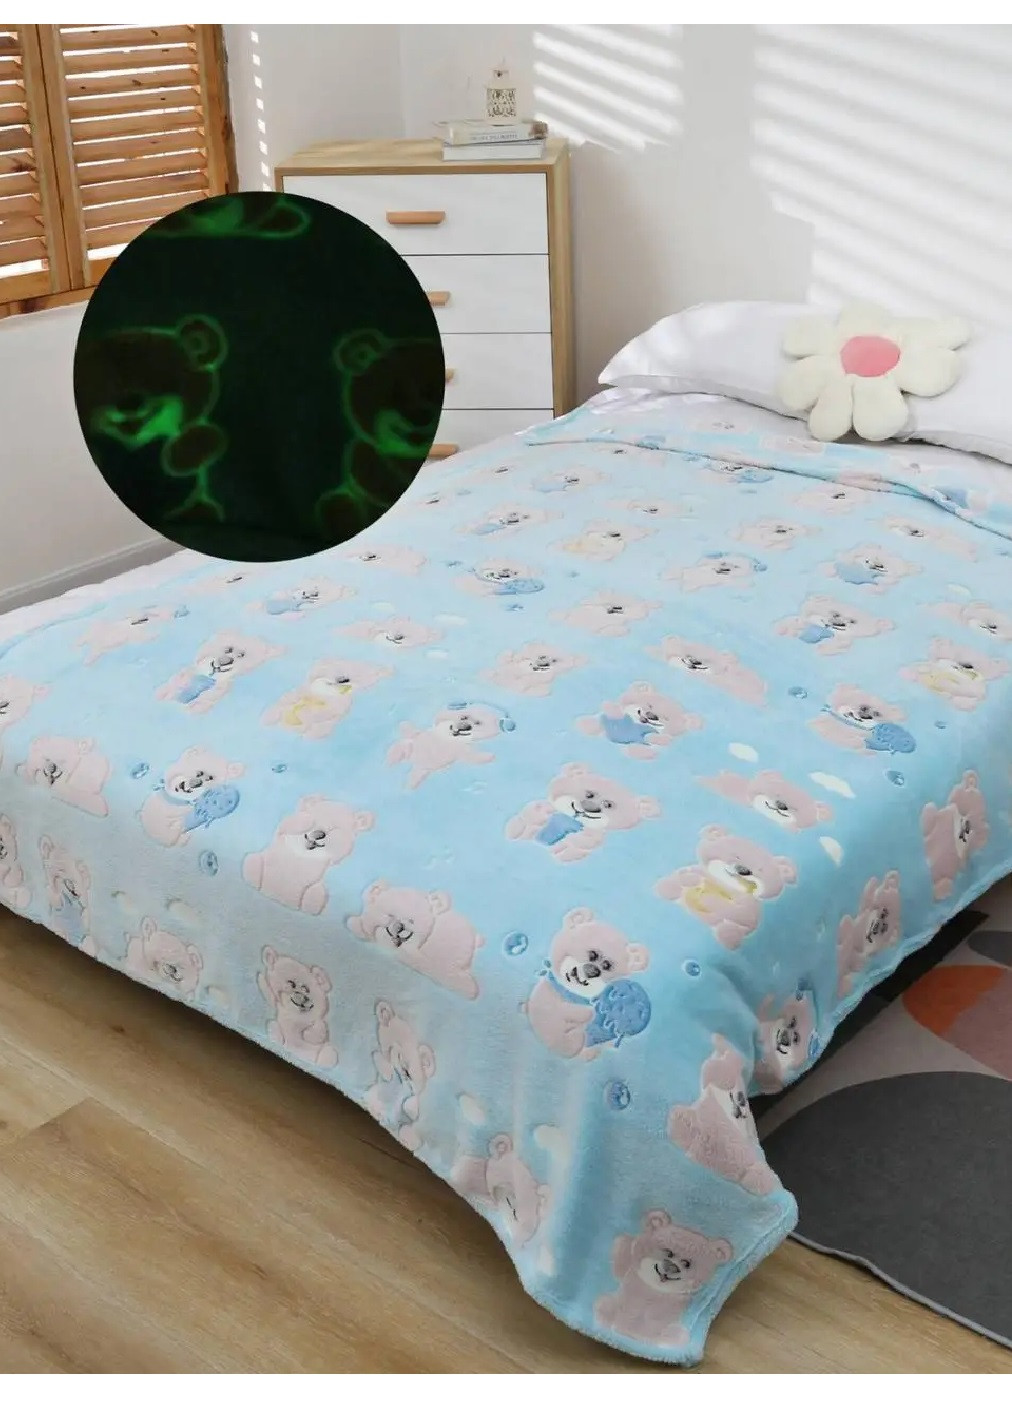 Детский плед светящийся в темноте покрывало одеяло микрофибра 100х135 см (473628-Prob) Голубой с мишками Unbranded (255708276)